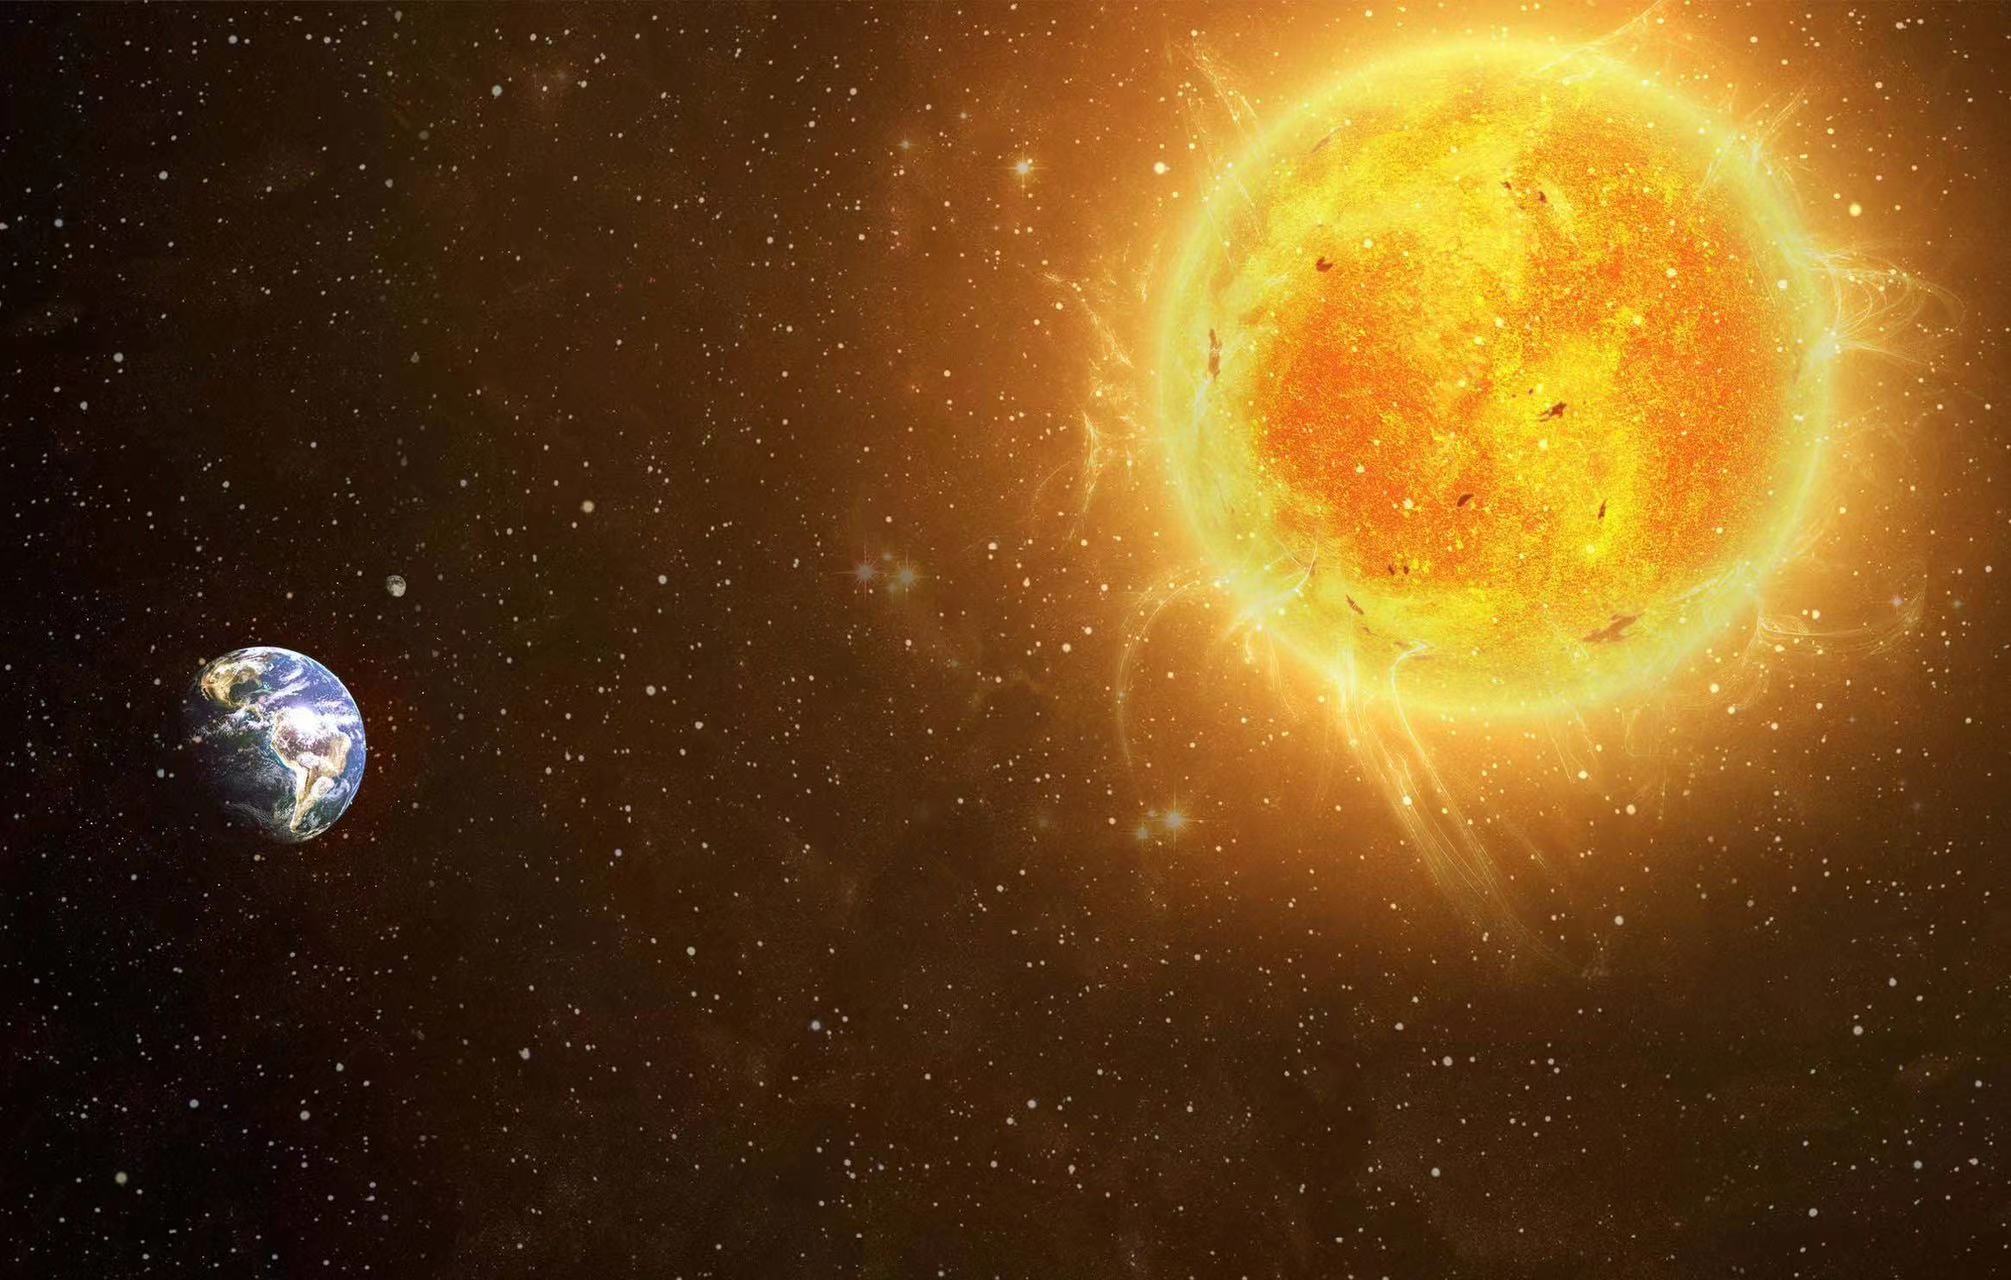 太阳是等离子体 会能量过多而燃烧殆尽吗？（太阳能量）